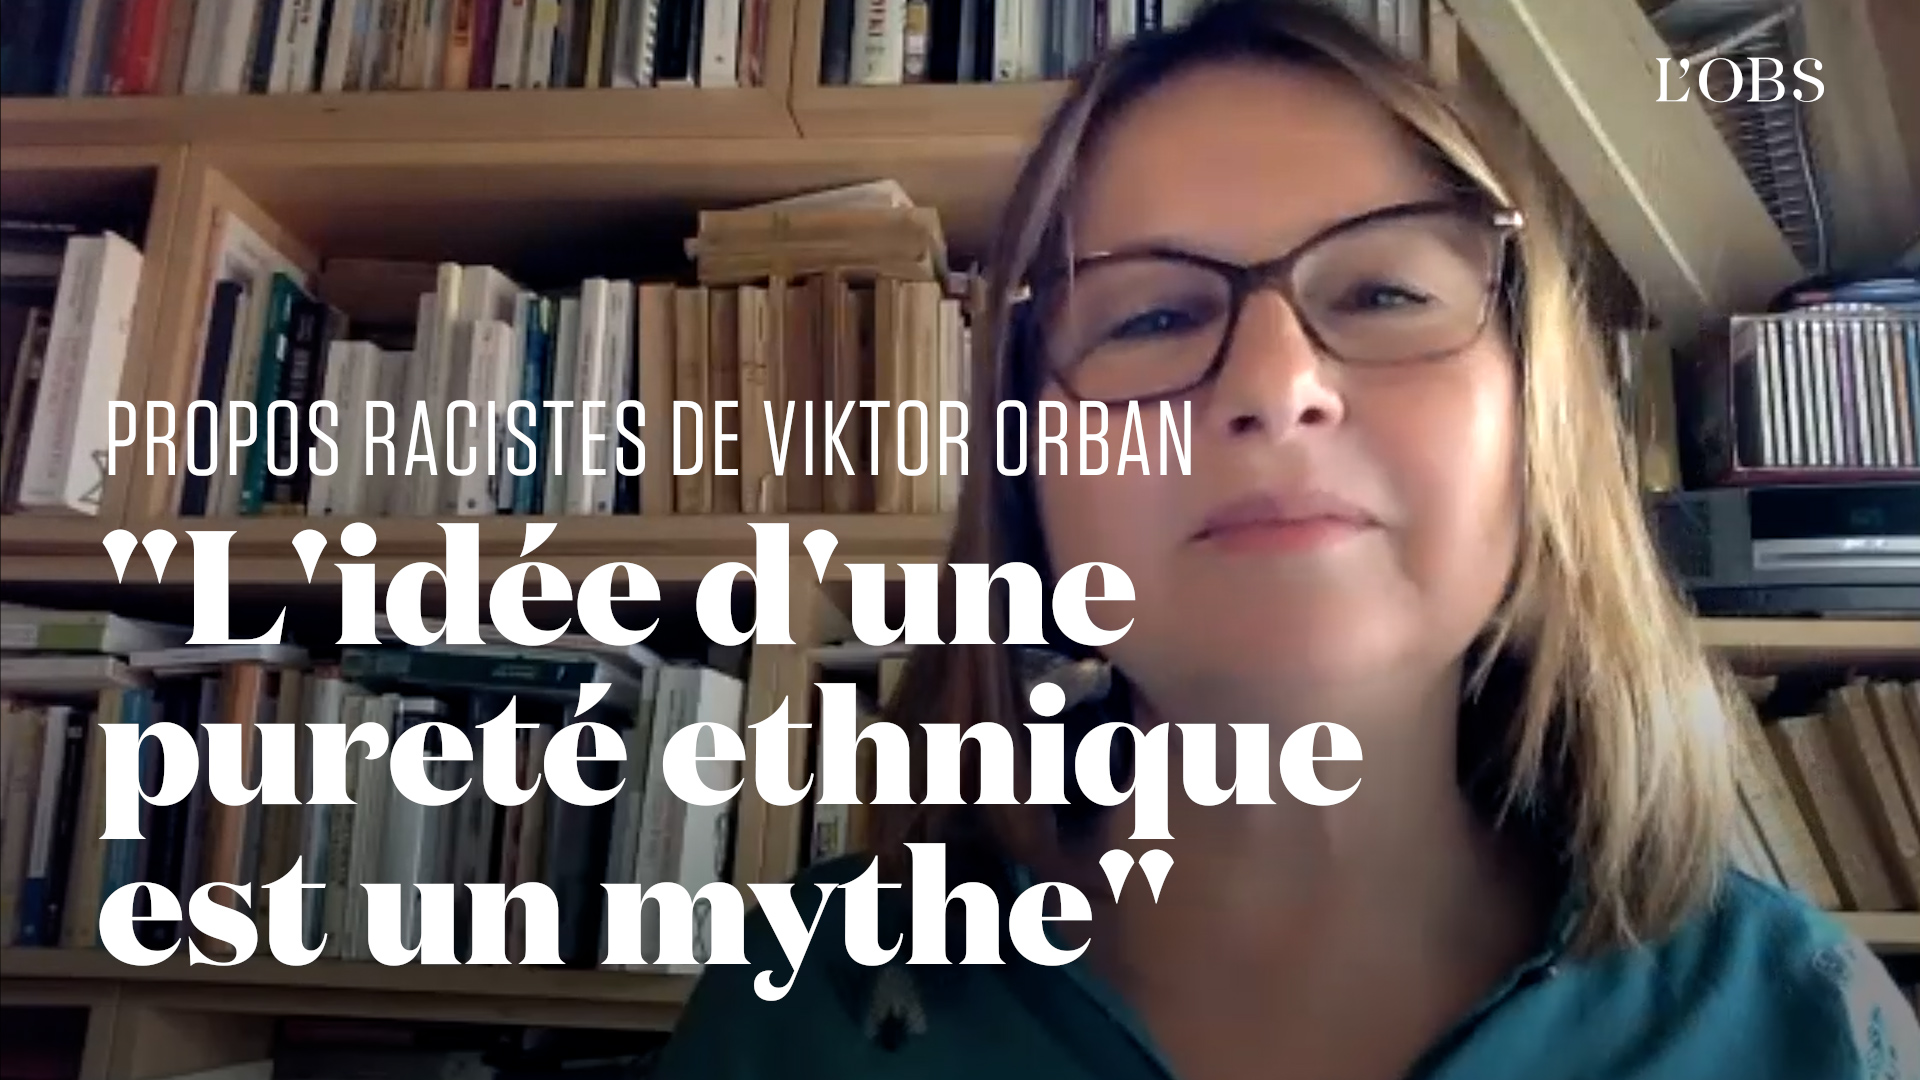 Une historienne spécialiste du fascisme réagit aux propos racistes de Viktor Orban